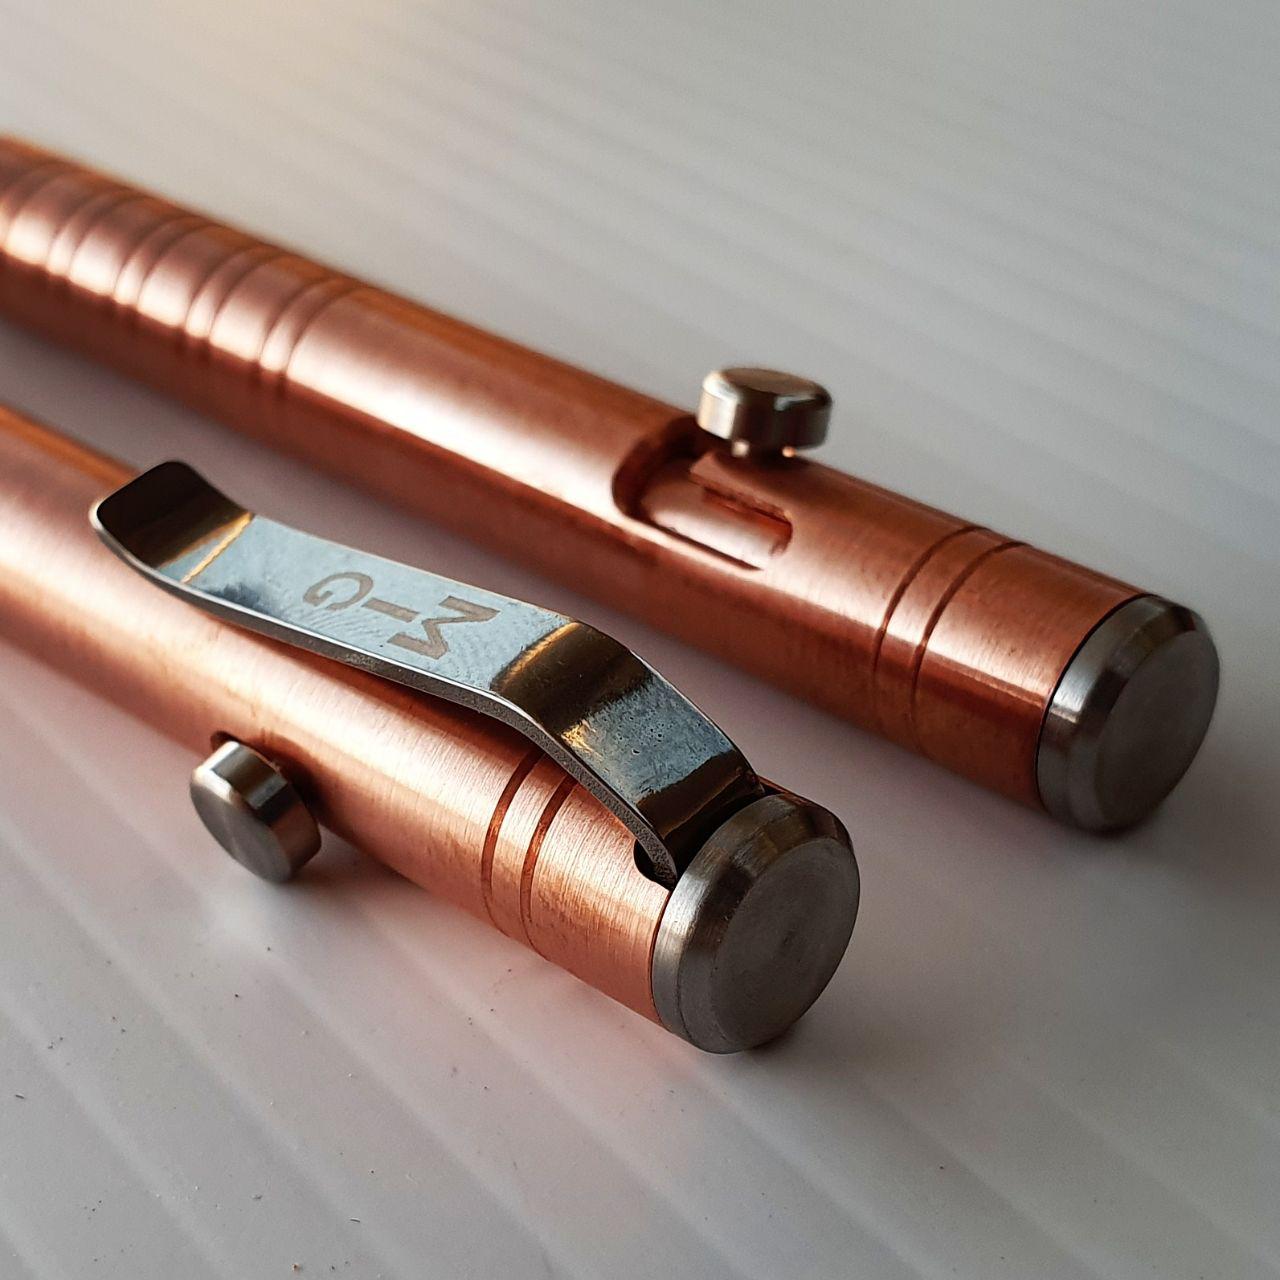 MIG Bolt Pen (Copper)